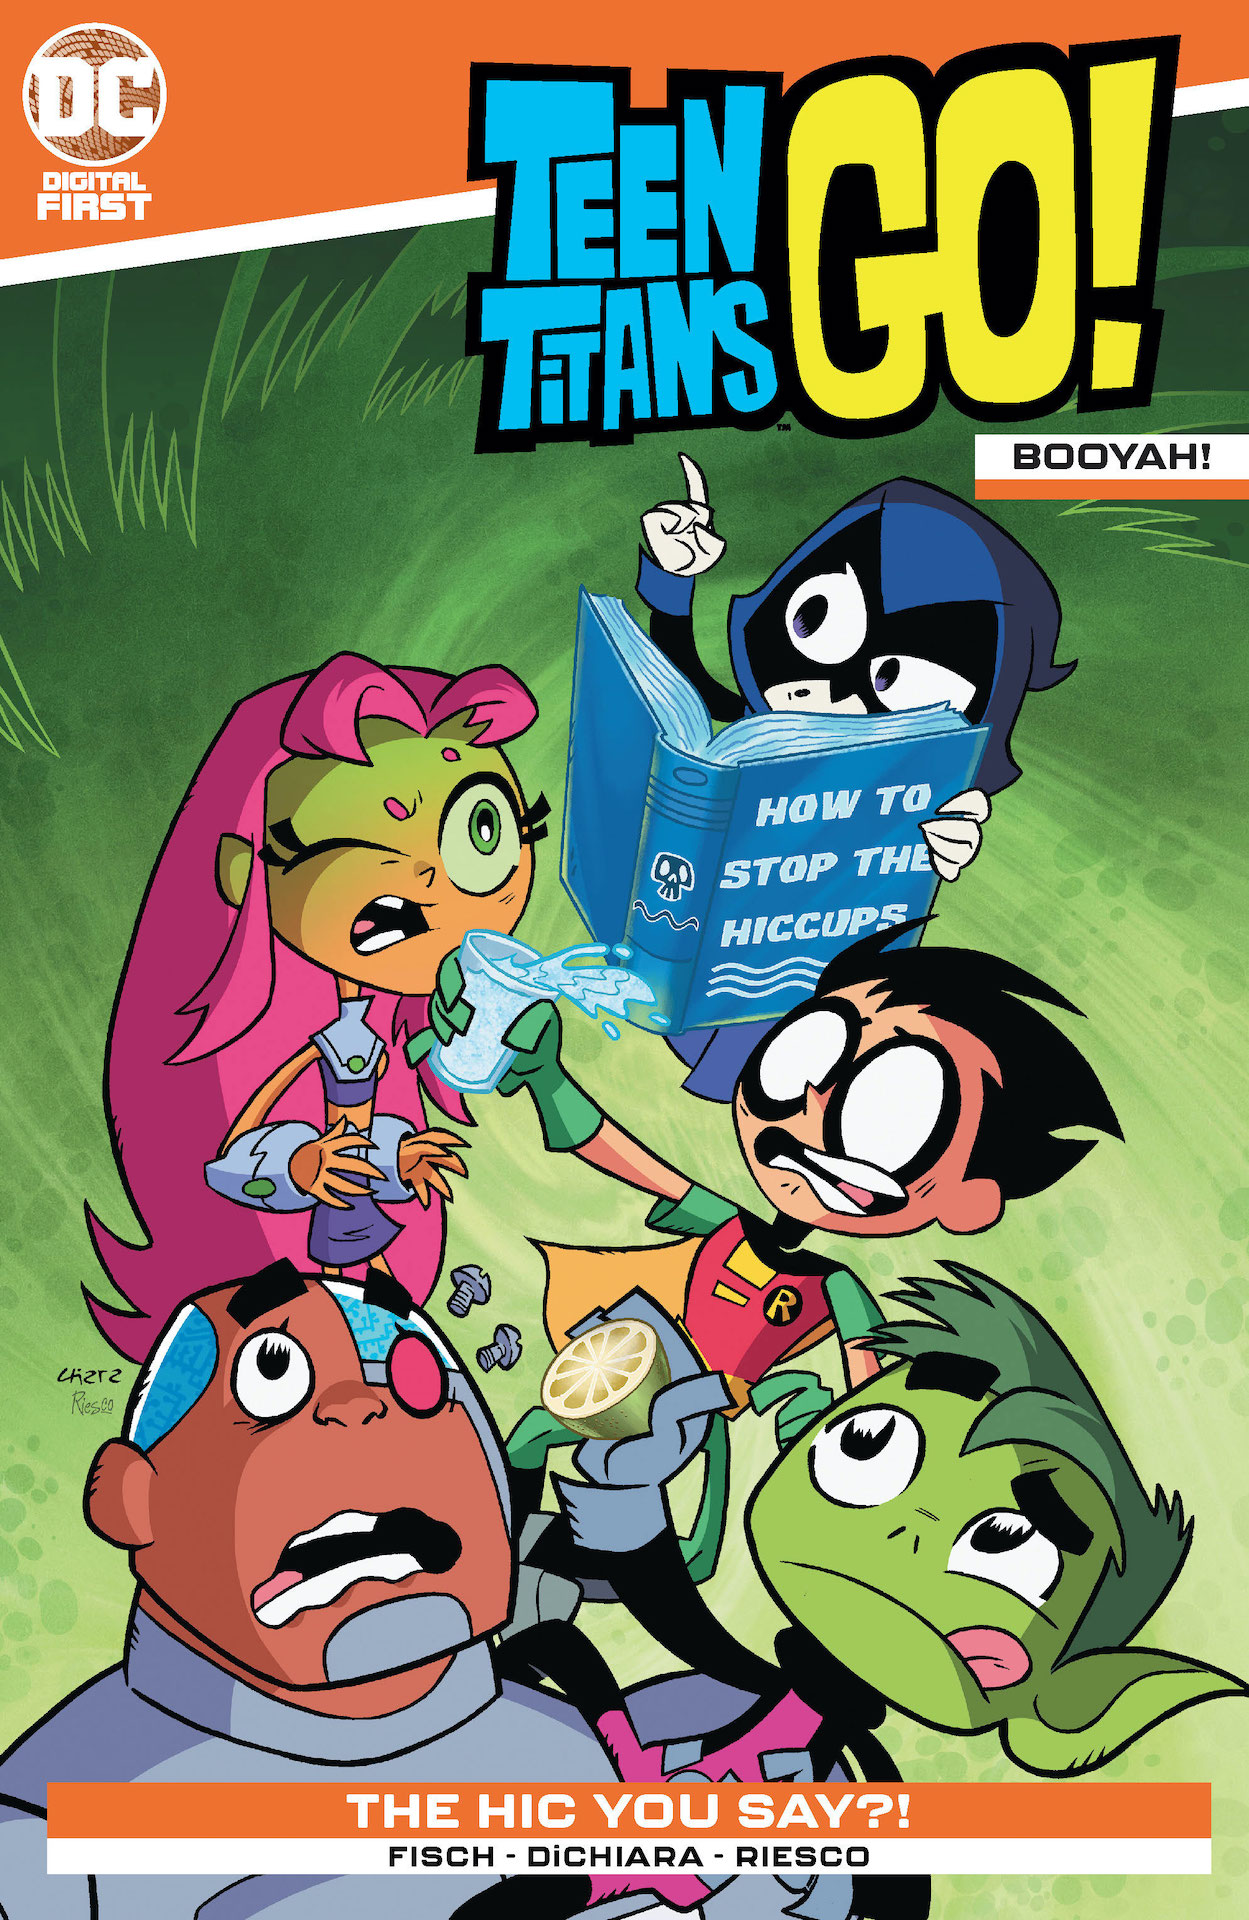 DC Preview: Teen Titans Go! Booyah #1